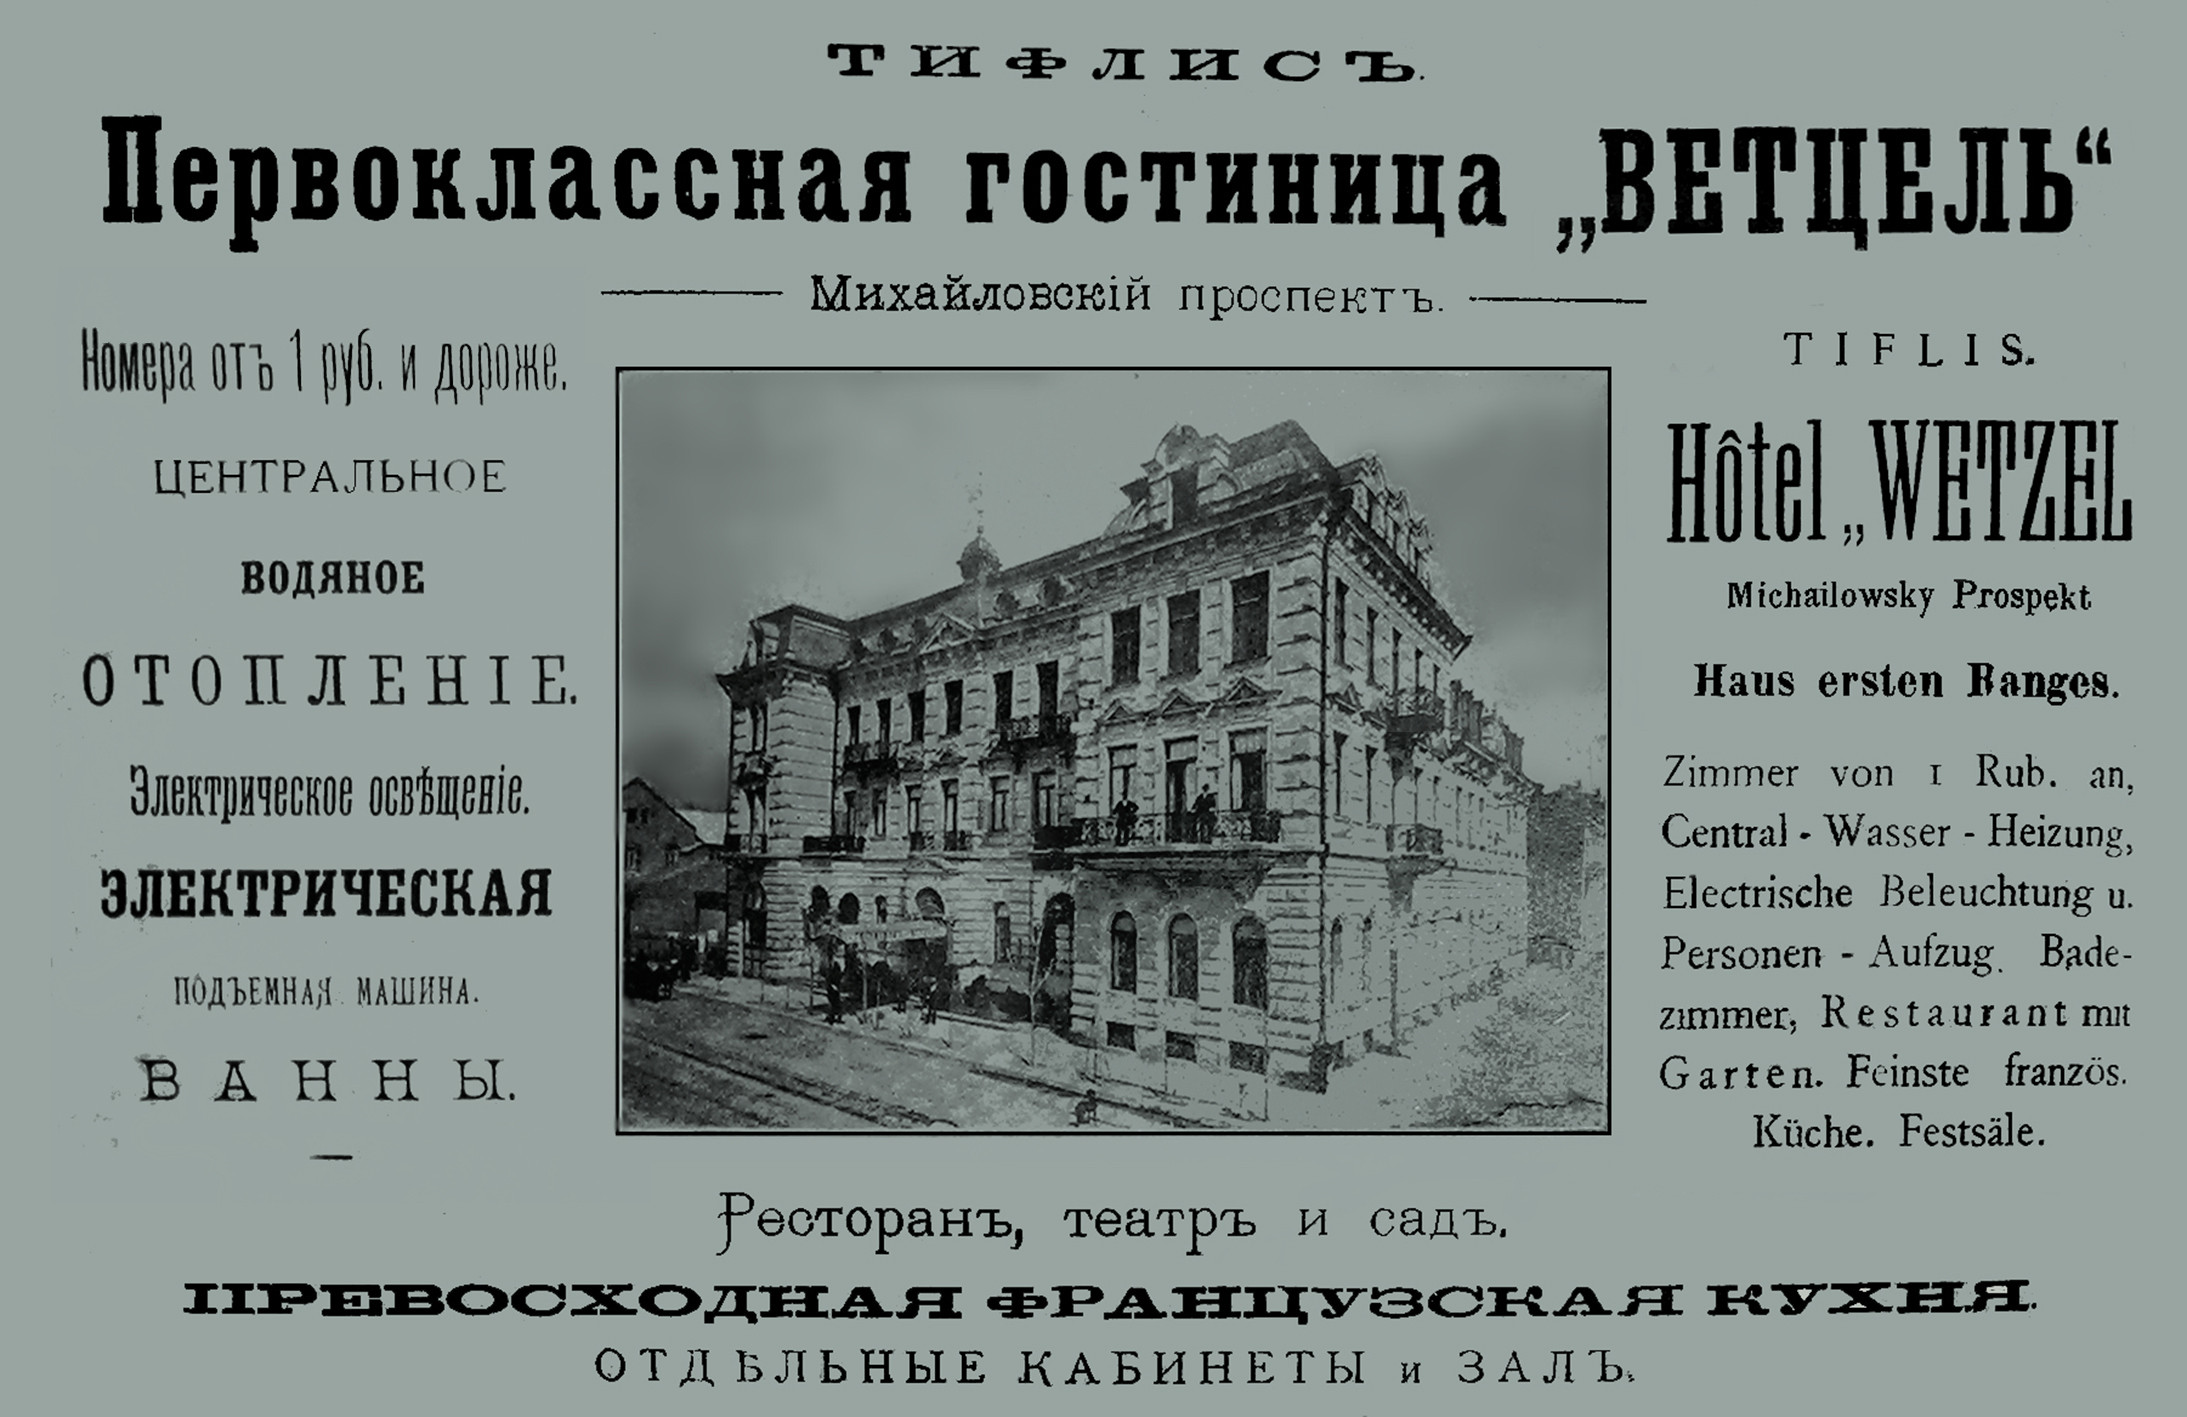 Рекламный проспект гостиницы «Ветцель» Изображение: german-georgian.archive.ge